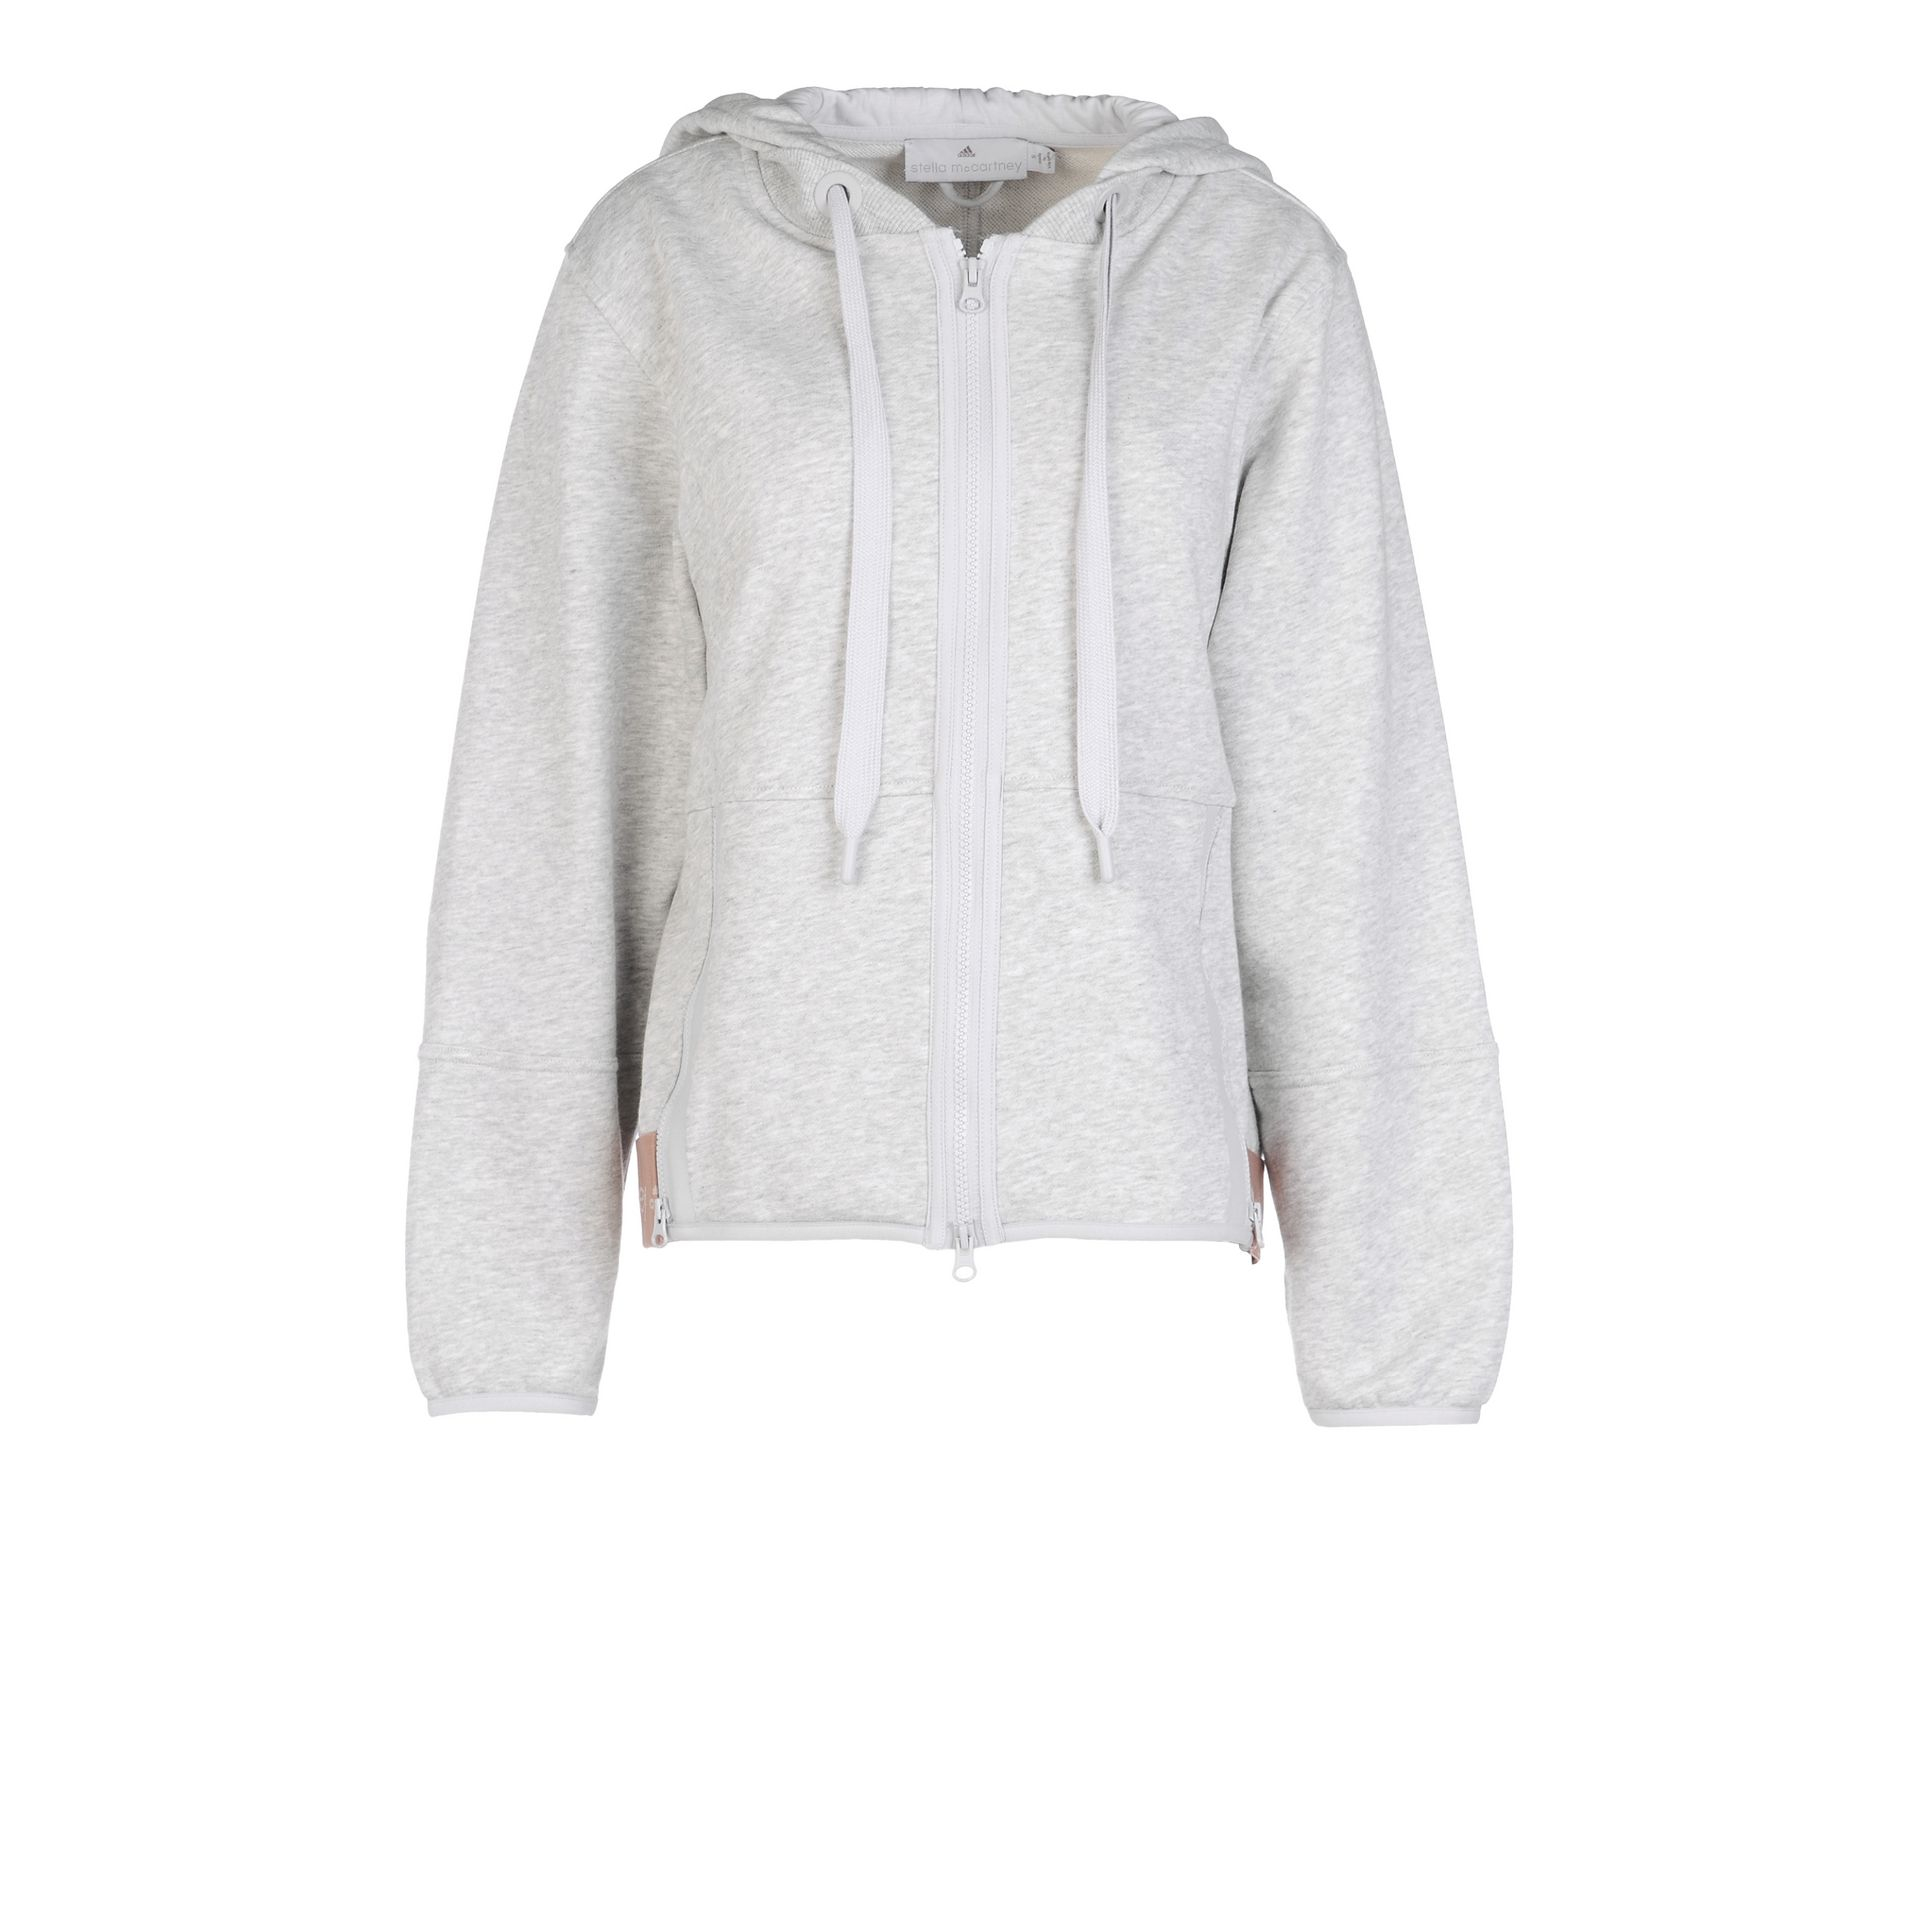 Lyst - Adidas By Stella Mccartney Pearl Grey Essentials Hoodie in Gray